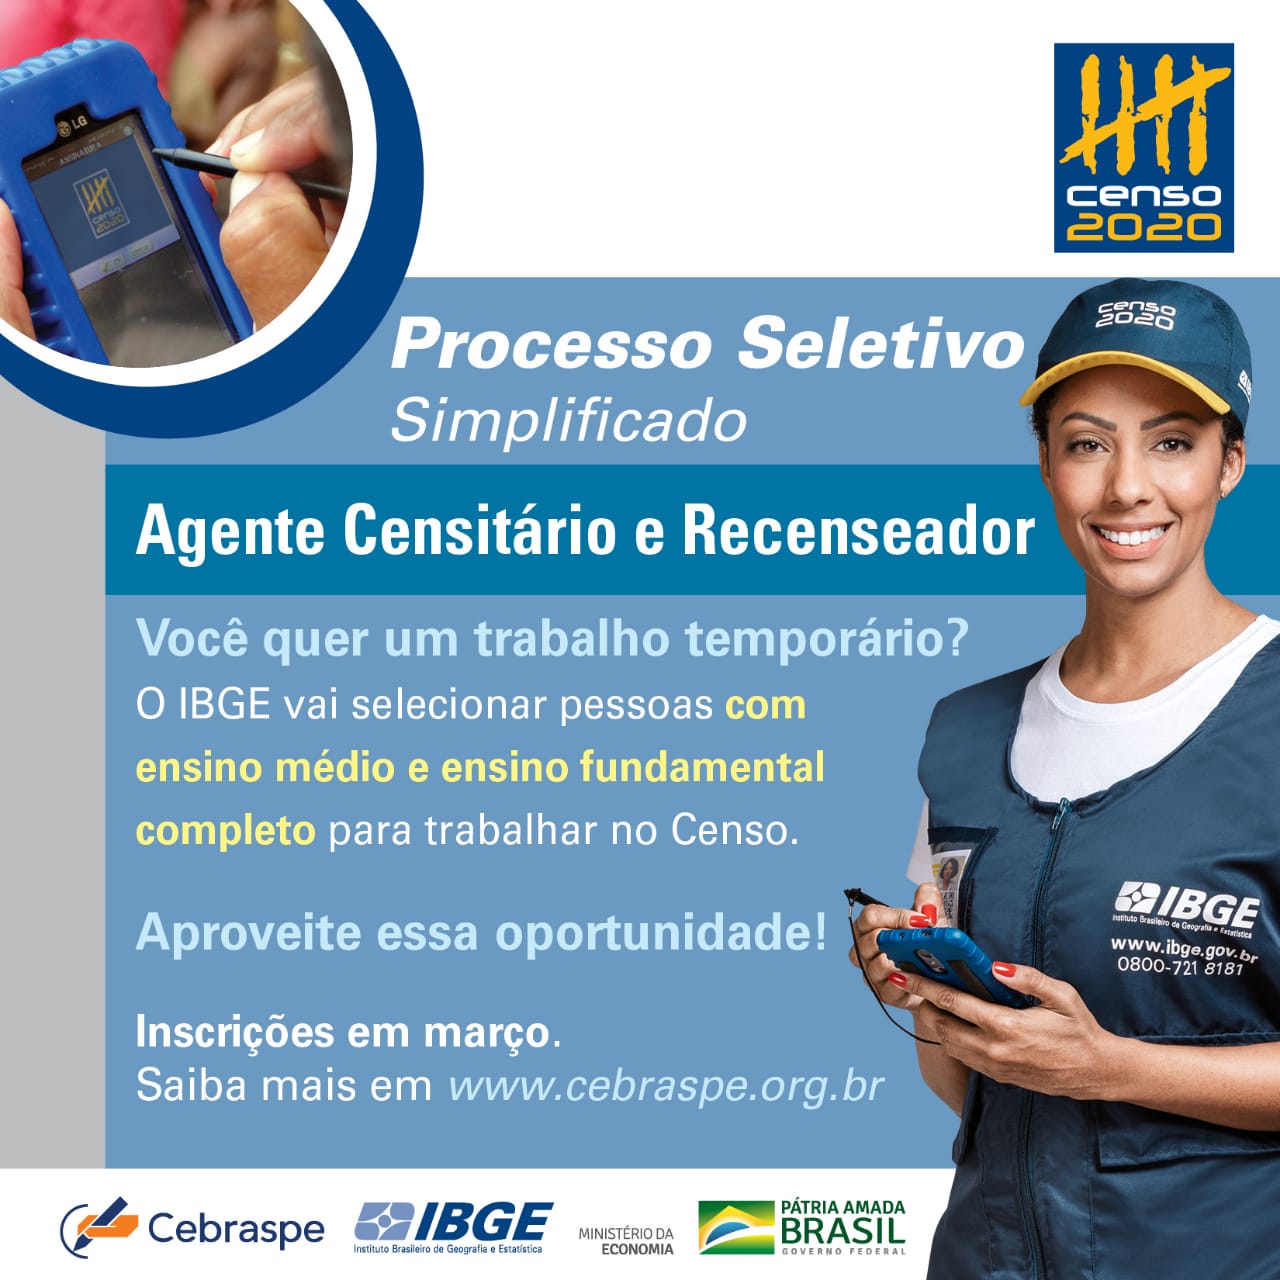 IBGE abre 12 mil vagas temporárias para o Censo no Paraná; Em Ubiratã serão 20 vagas para recenseador e 4 para ACM/ACS